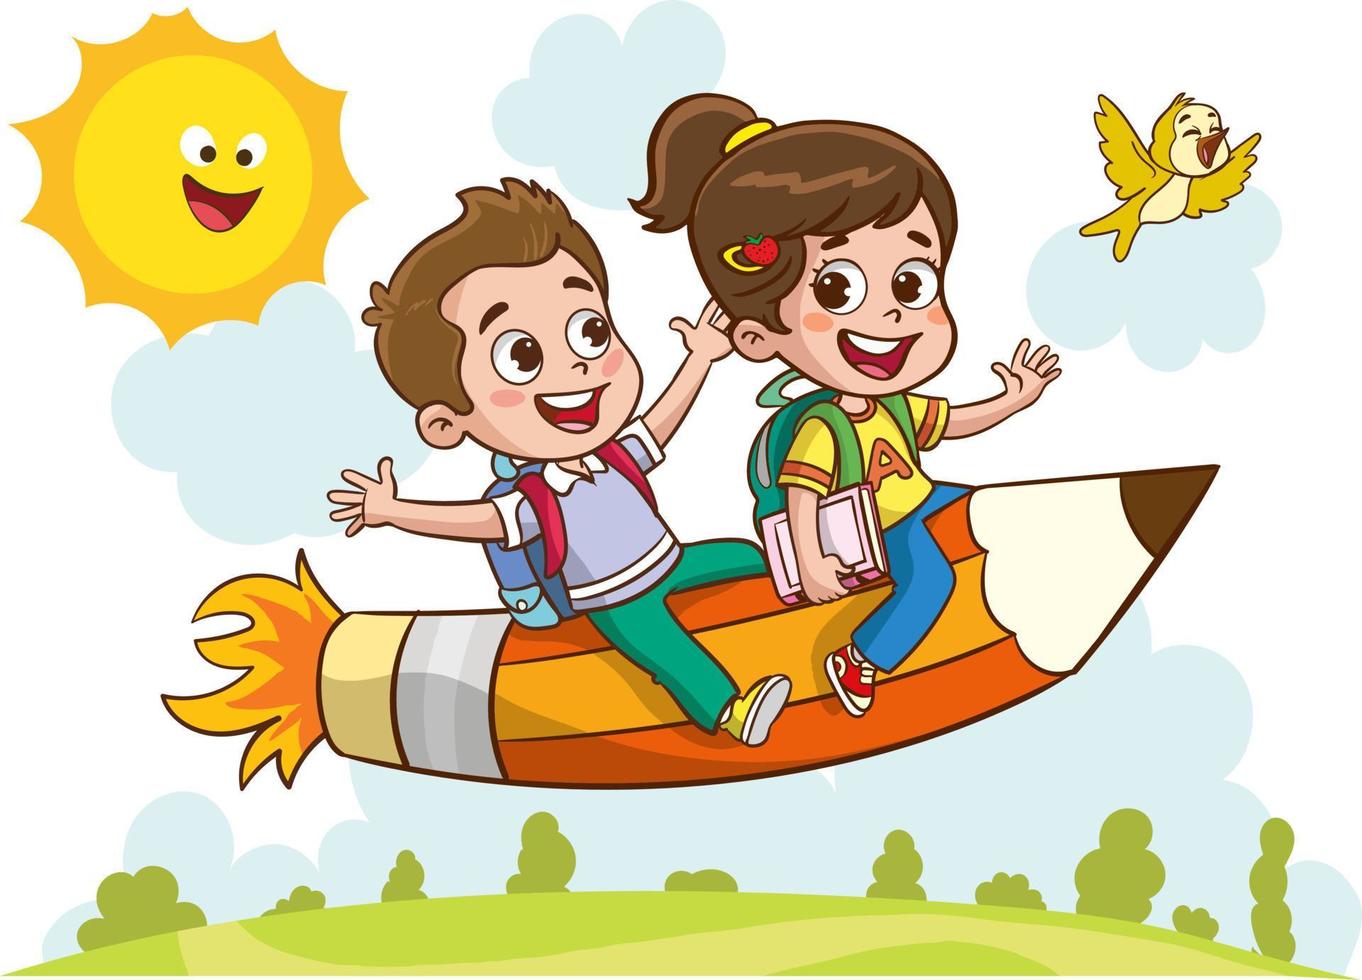 divertimento educativo immagini con educativo materiali.divertente ragazzo volante su colorato matita cartone animato vettore